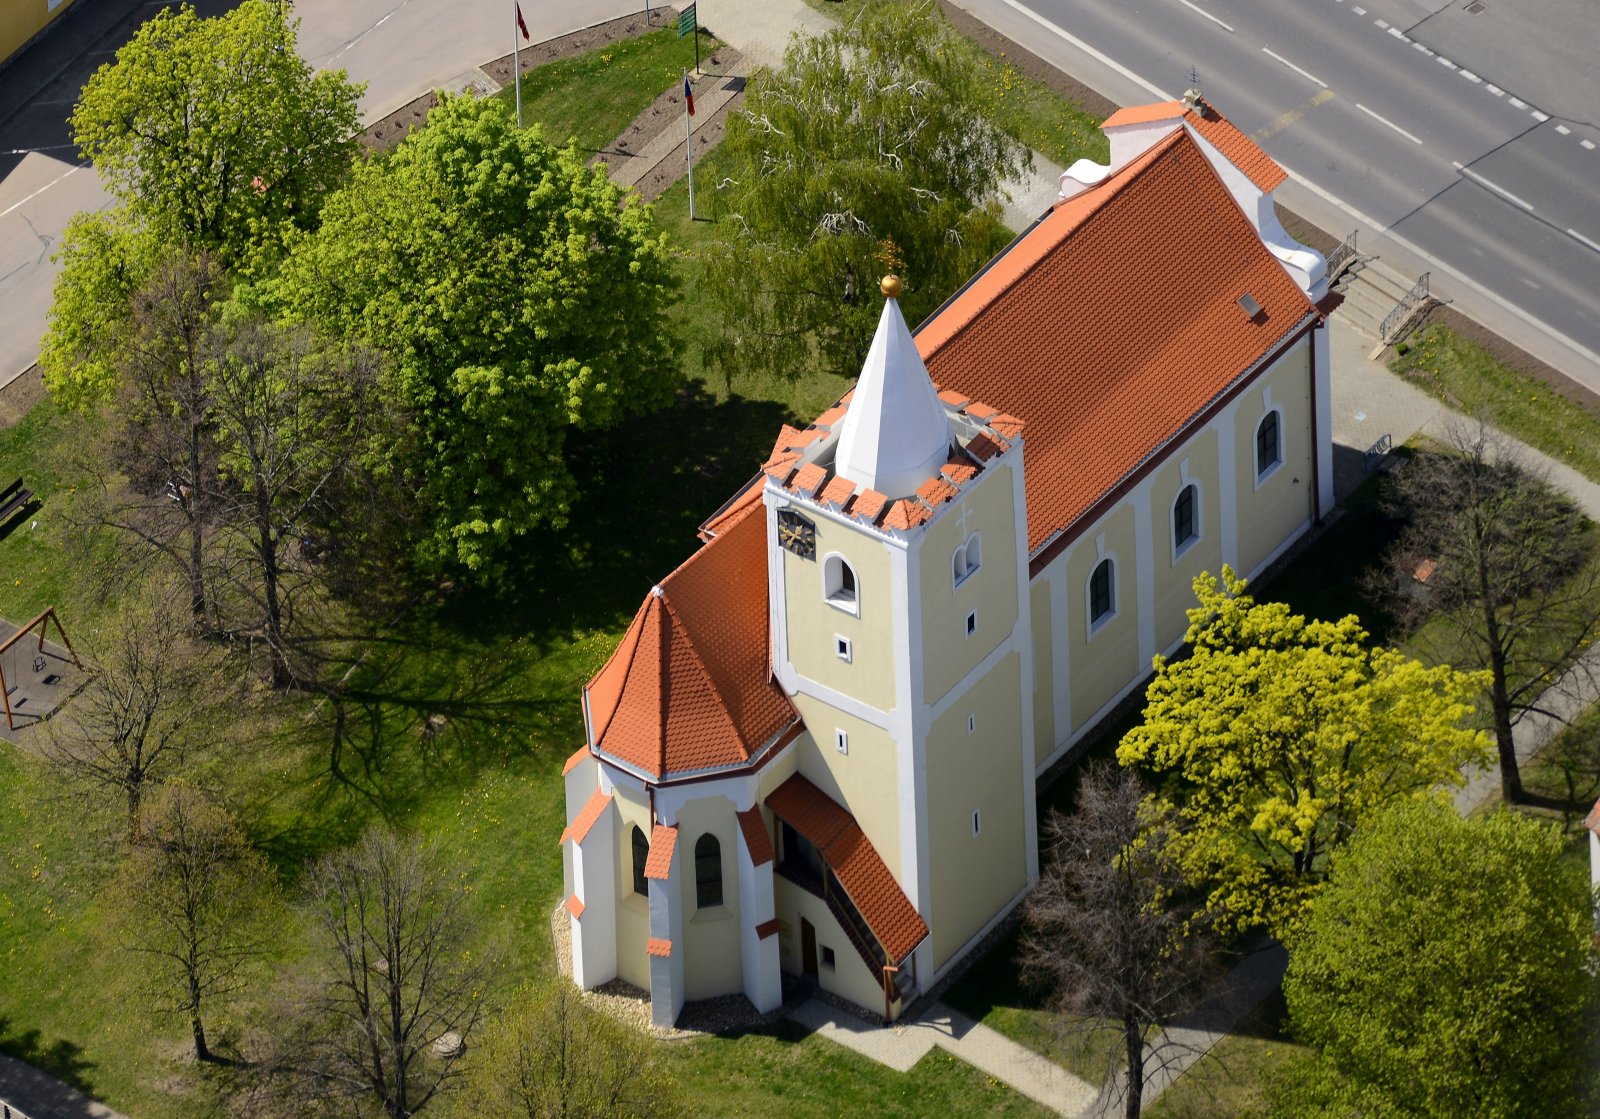 Kostel sv. Markéty ve Chvalovicích